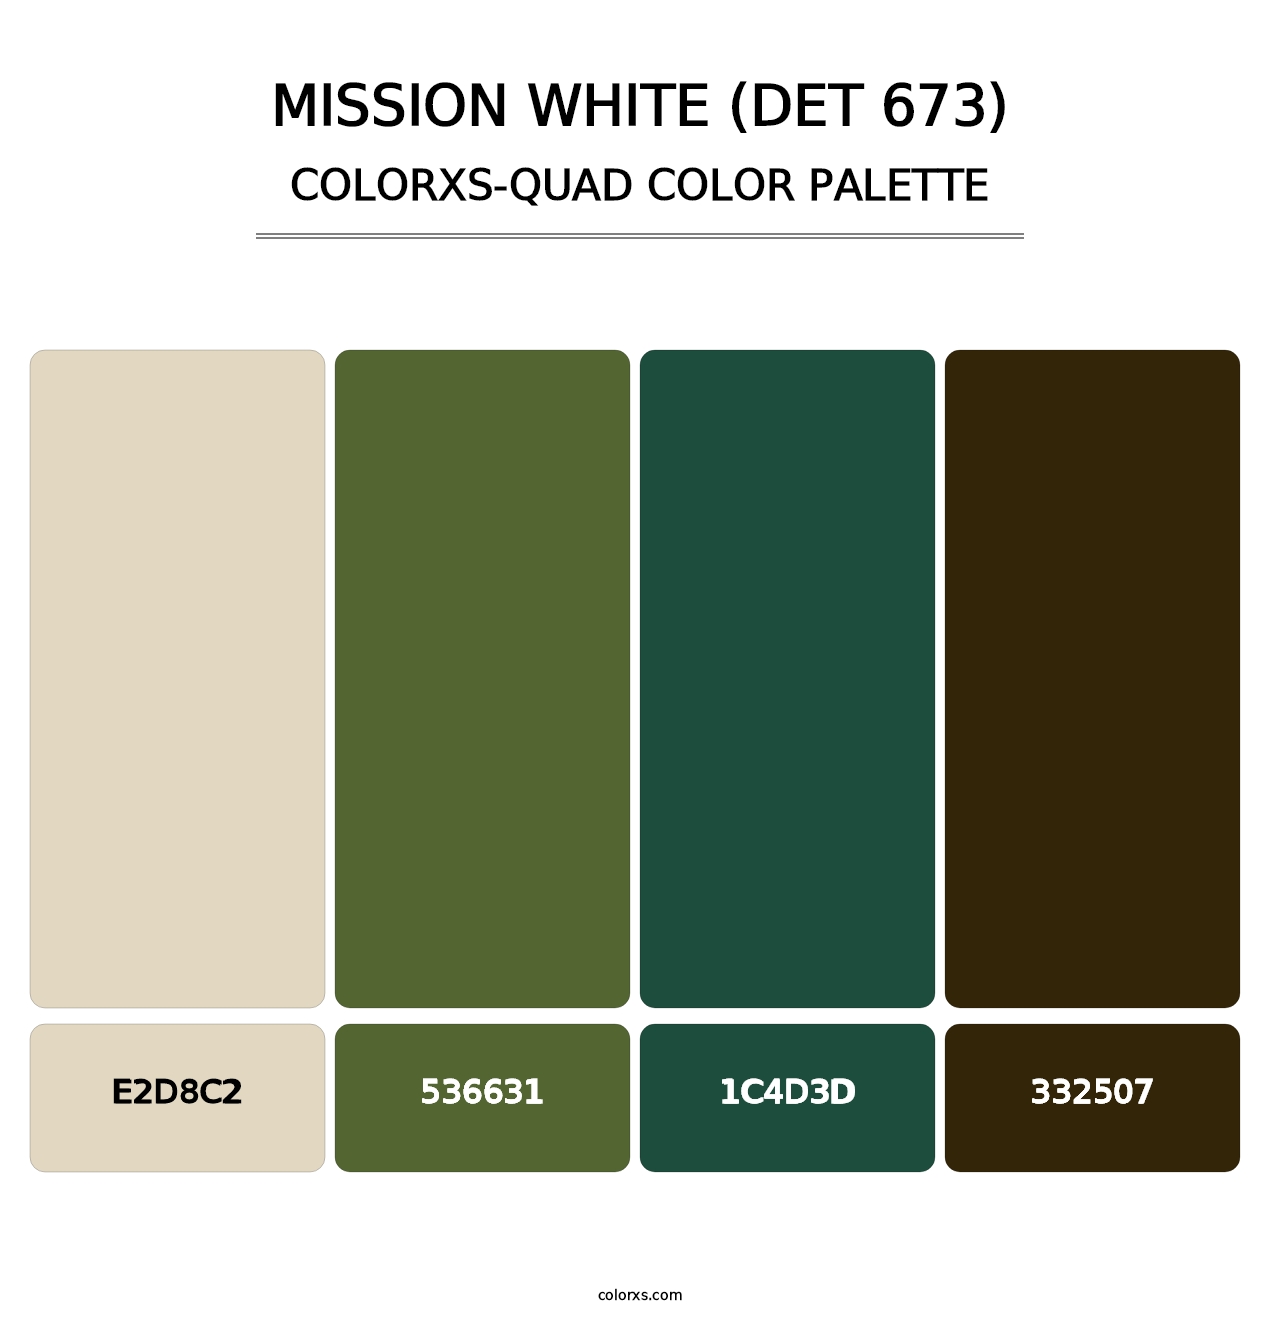 Mission White (DET 673) - Colorxs Quad Palette